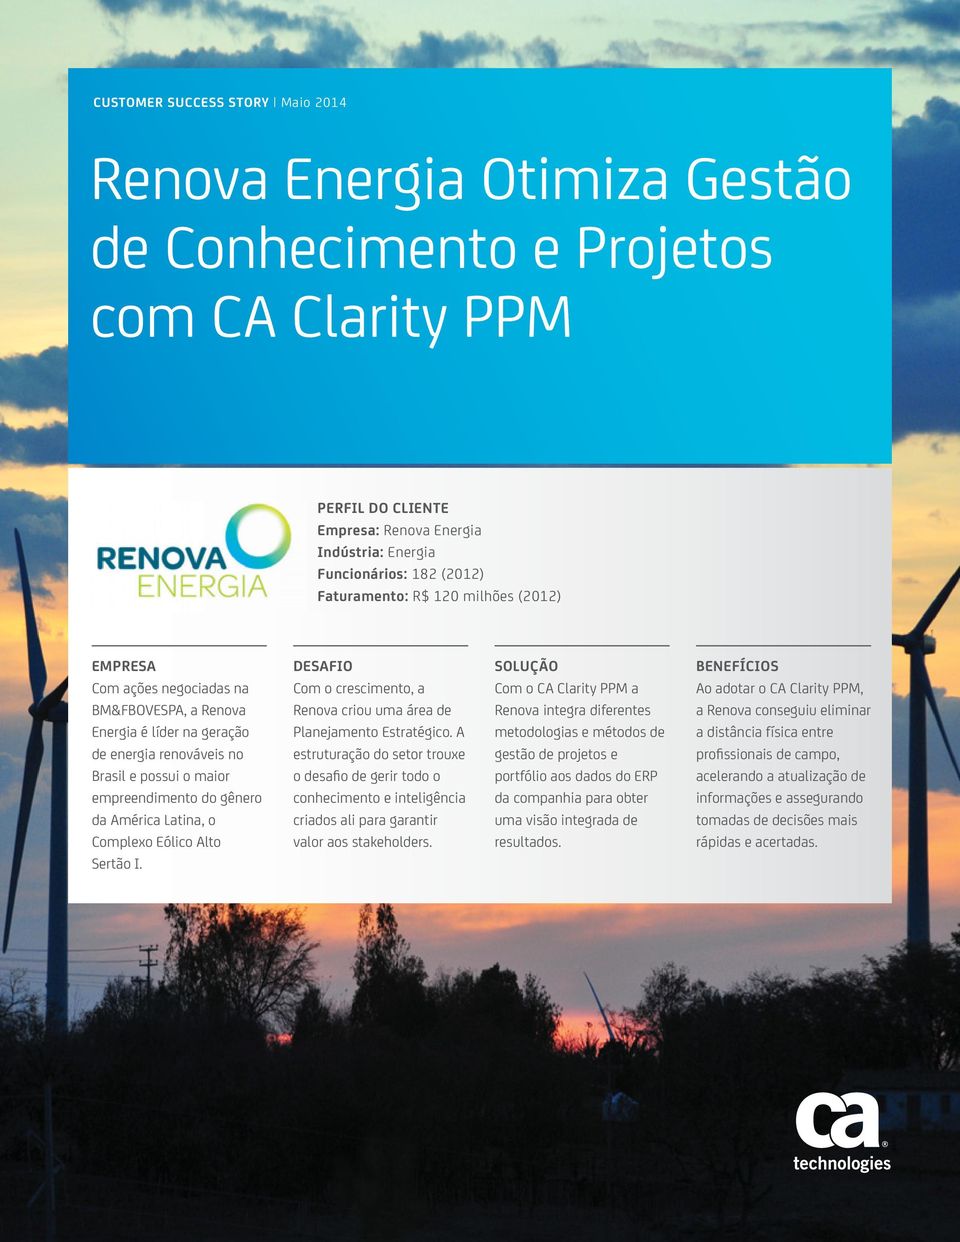 América Latina, o Complexo Eólico Alto Sertão I. DESAFIO Com o crescimento, a Renova criou uma área de Planejamento Estratégico.